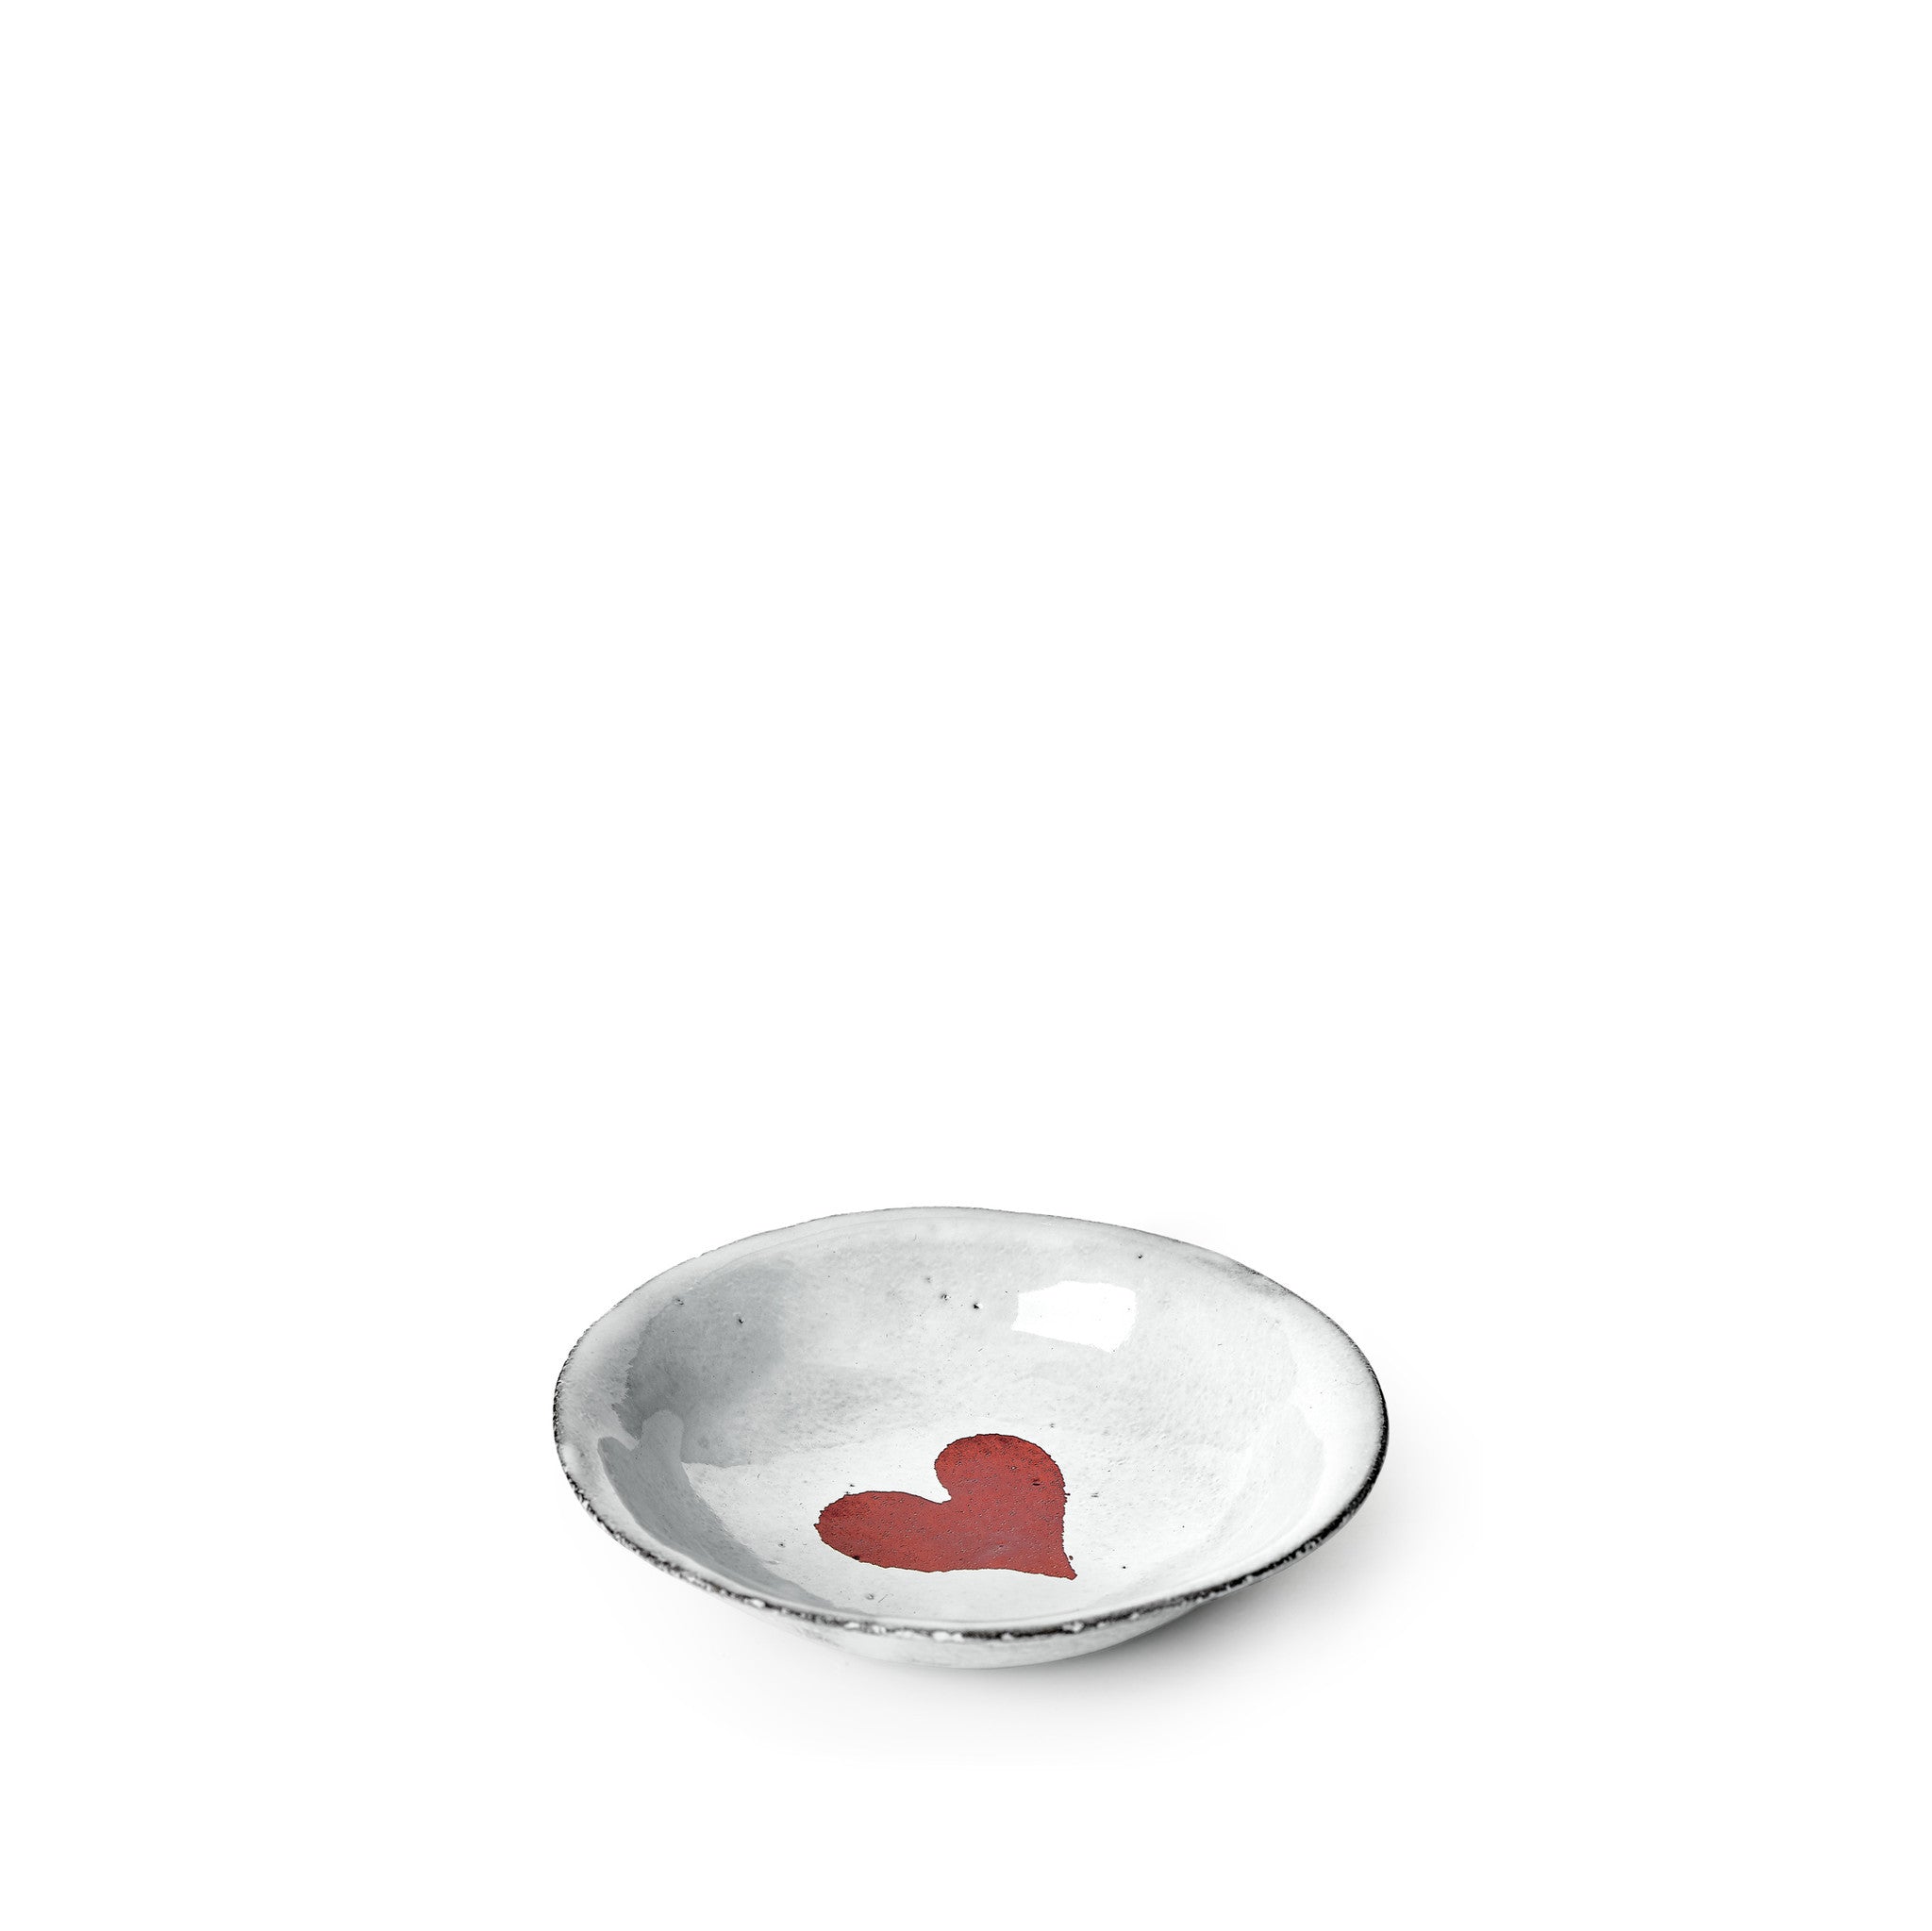 Heart Saucer by Astier de Villatte, 11.5cm